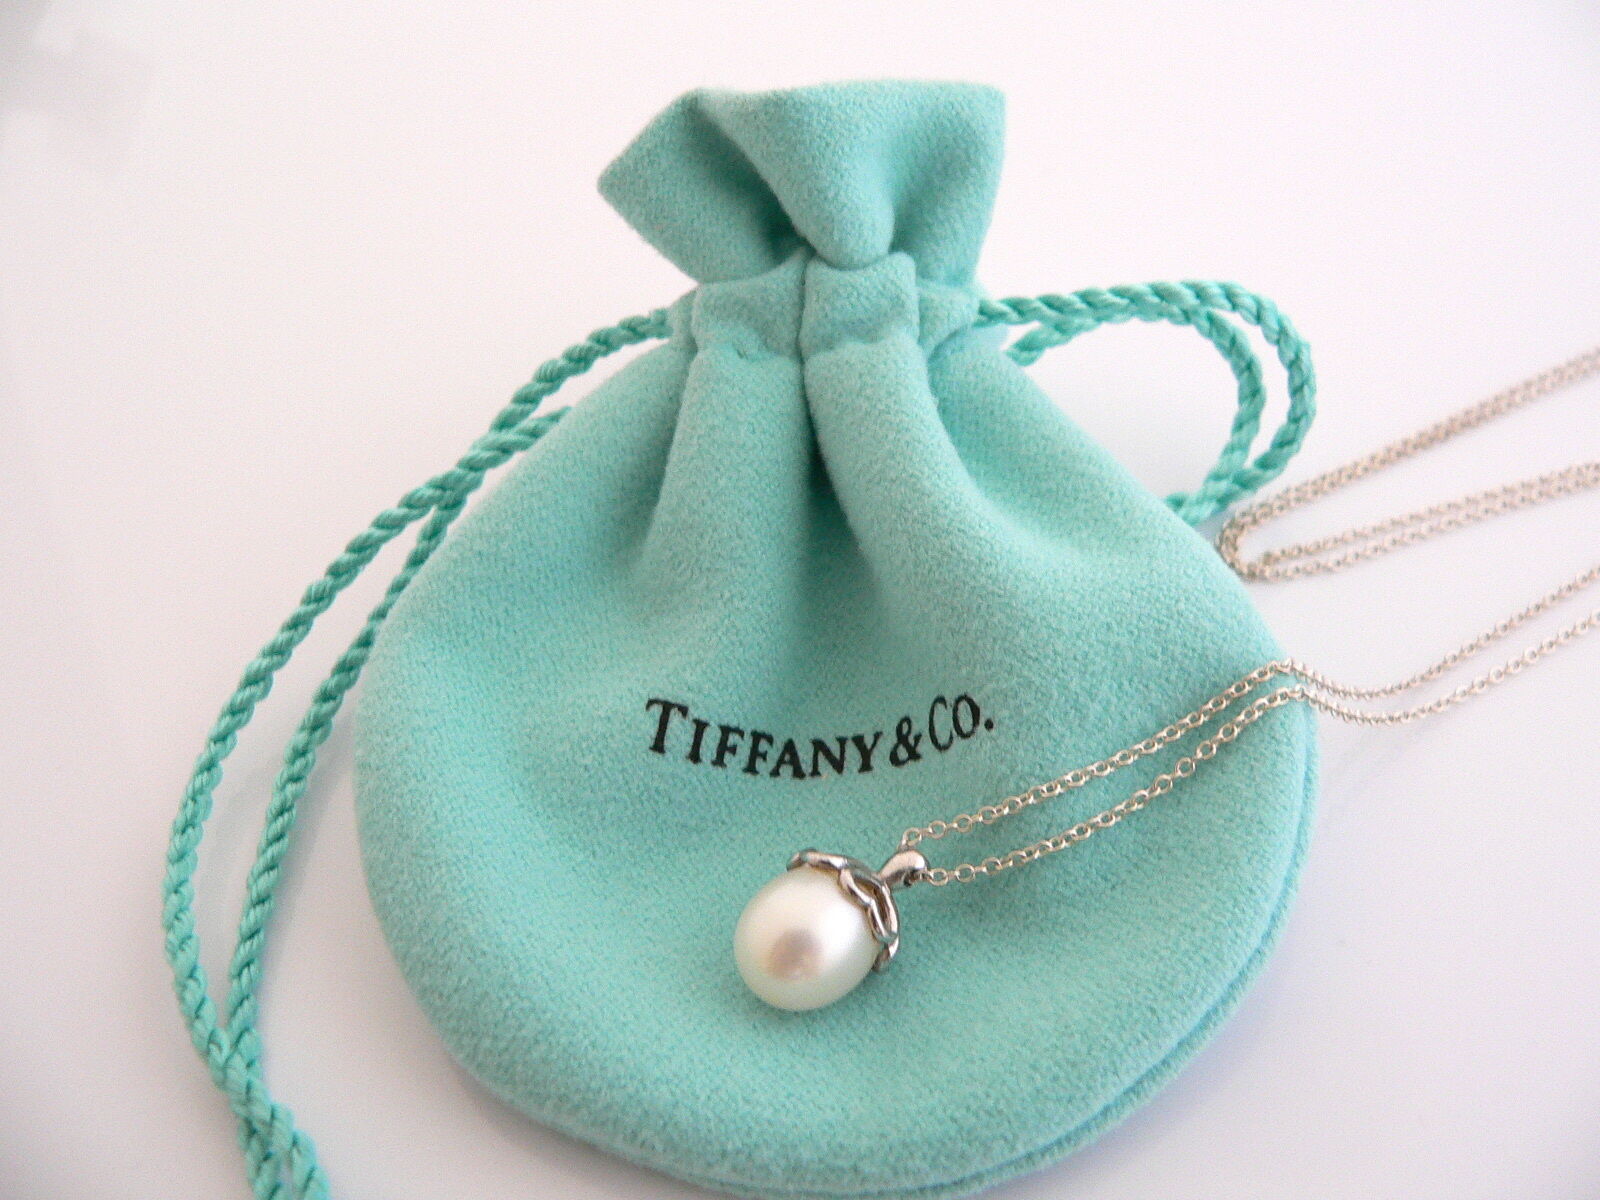 Tiffany & Co Silver Heart Cap Pearl Necklace Pendant Charm Chain Rare 17.5 Inch